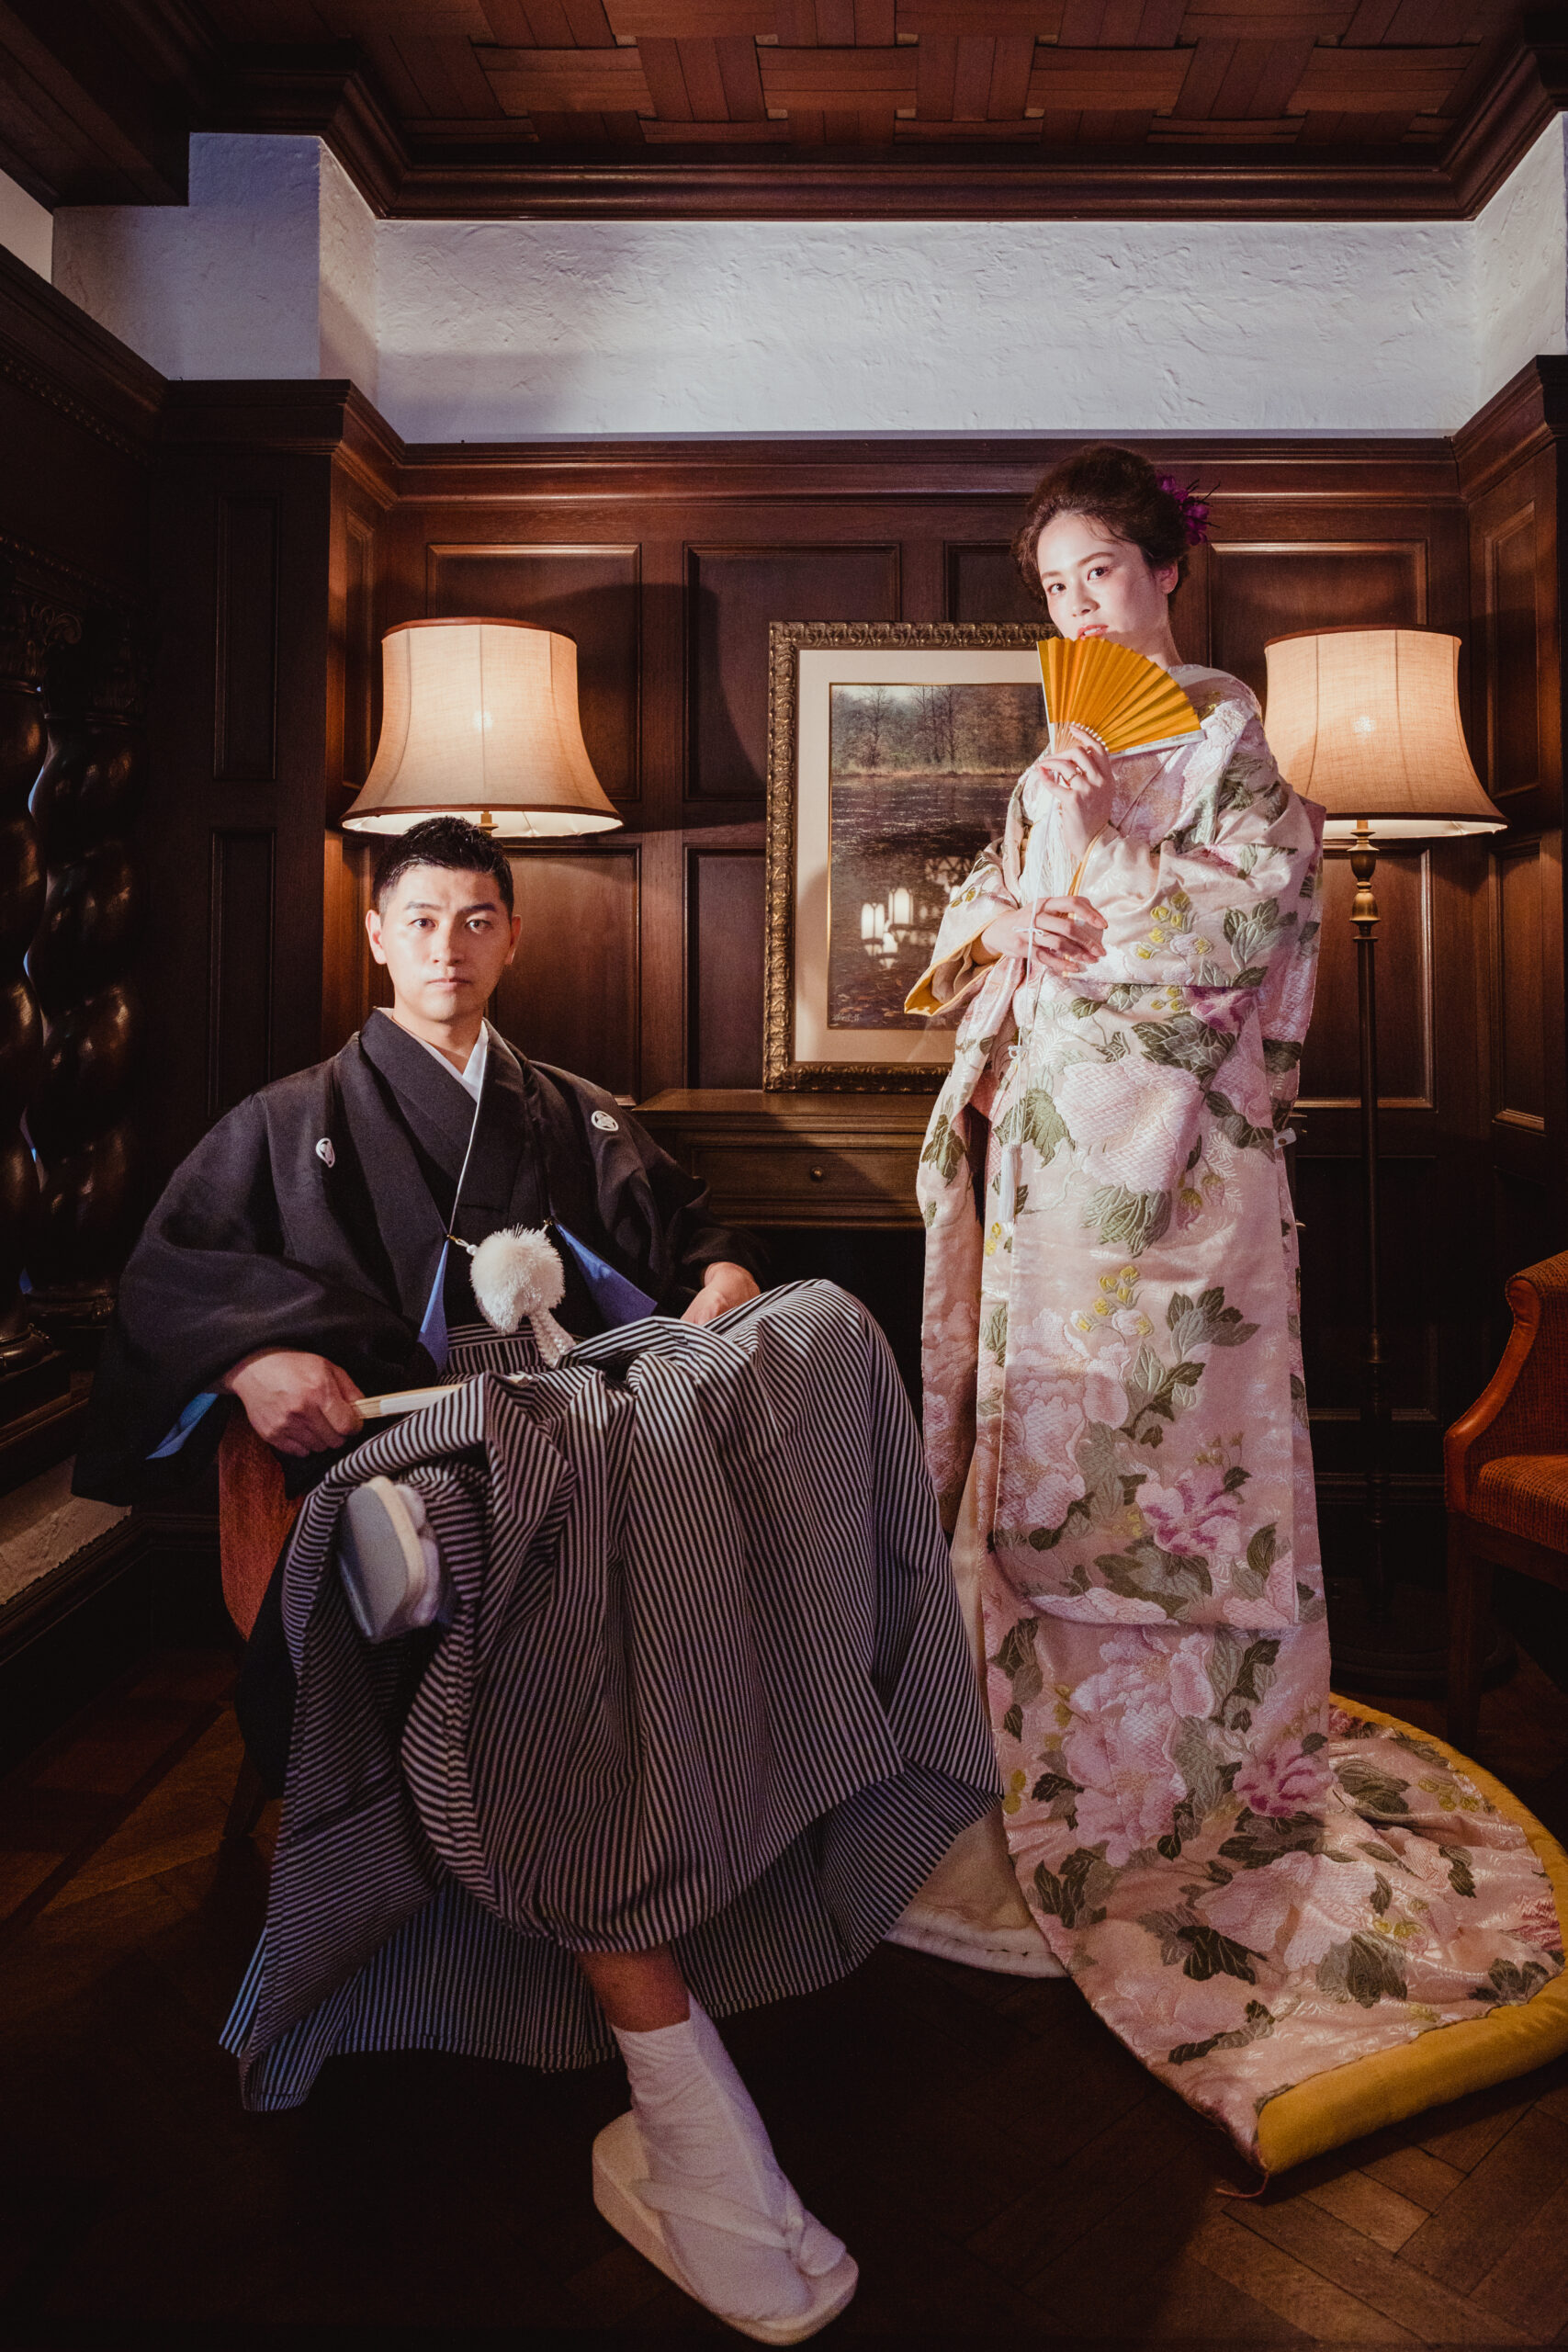 赤坂プリンスクラシックハウスのしつらえは、ブラウンを基調とする木目調の内装で重厚感と温かみが魅力です。そんな会場内で日本の伝統衣裳である着物を纏って前撮りはいかがでしょうか。